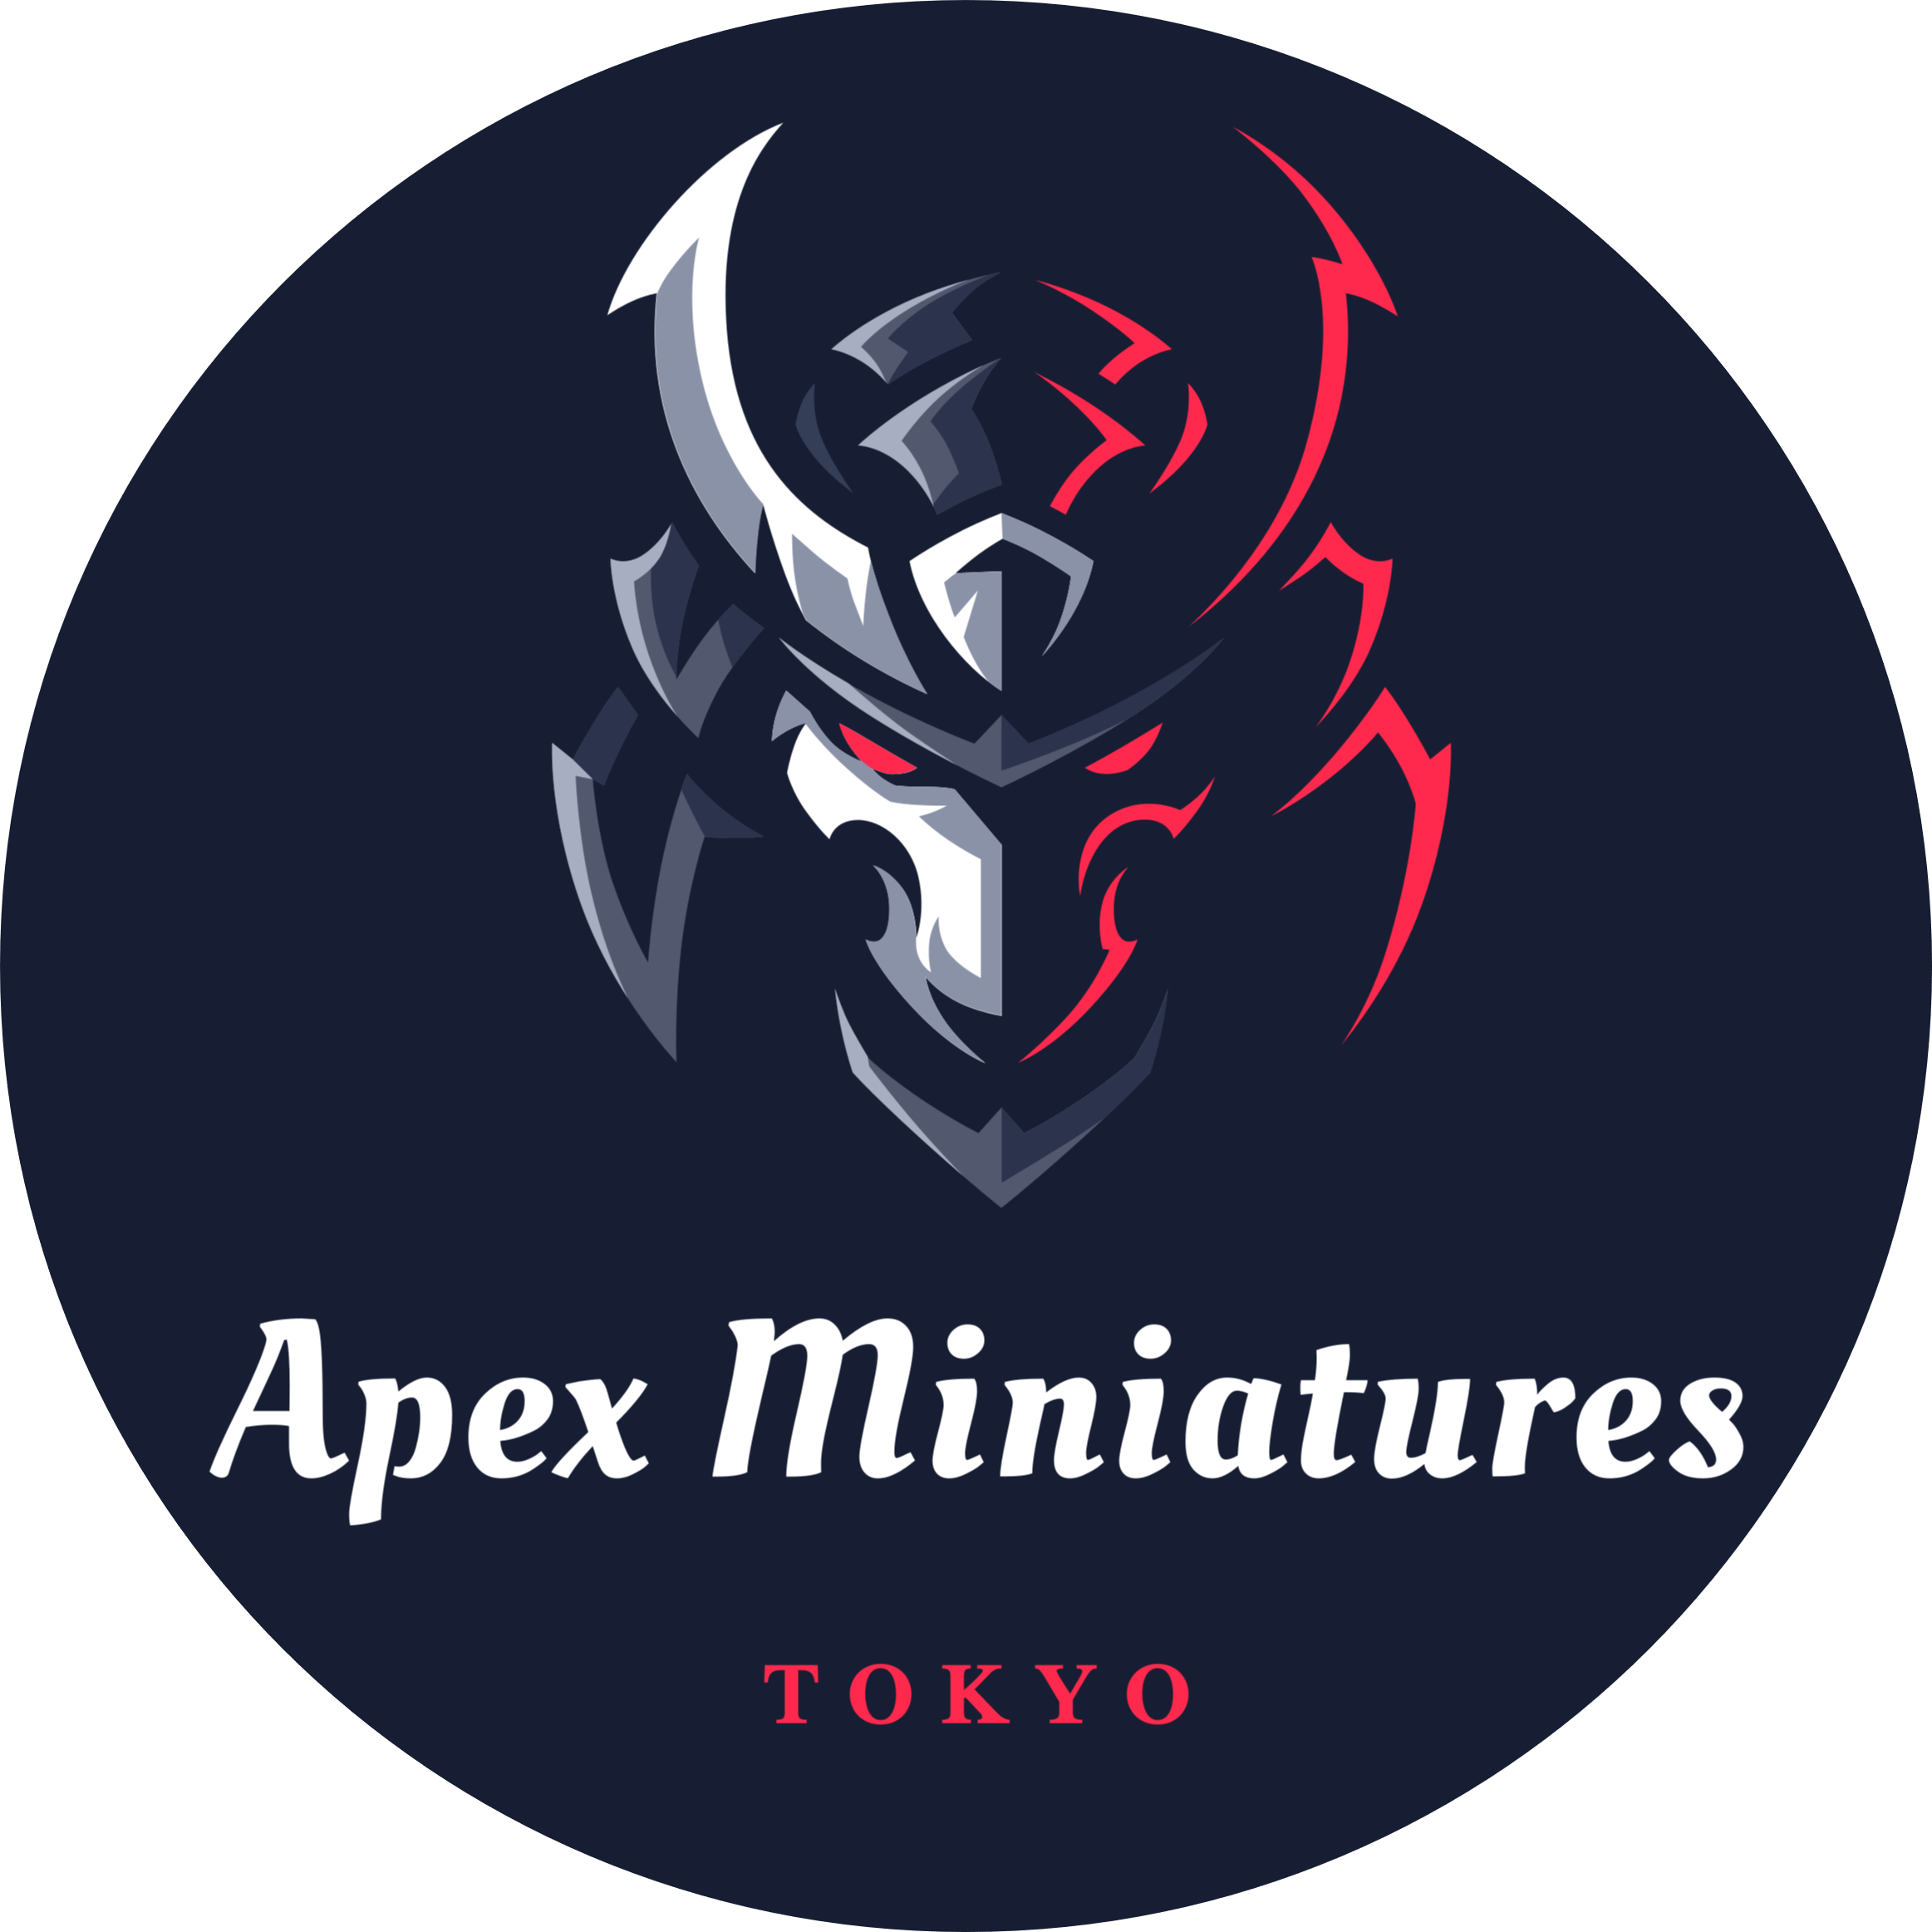 Apex Miniatures